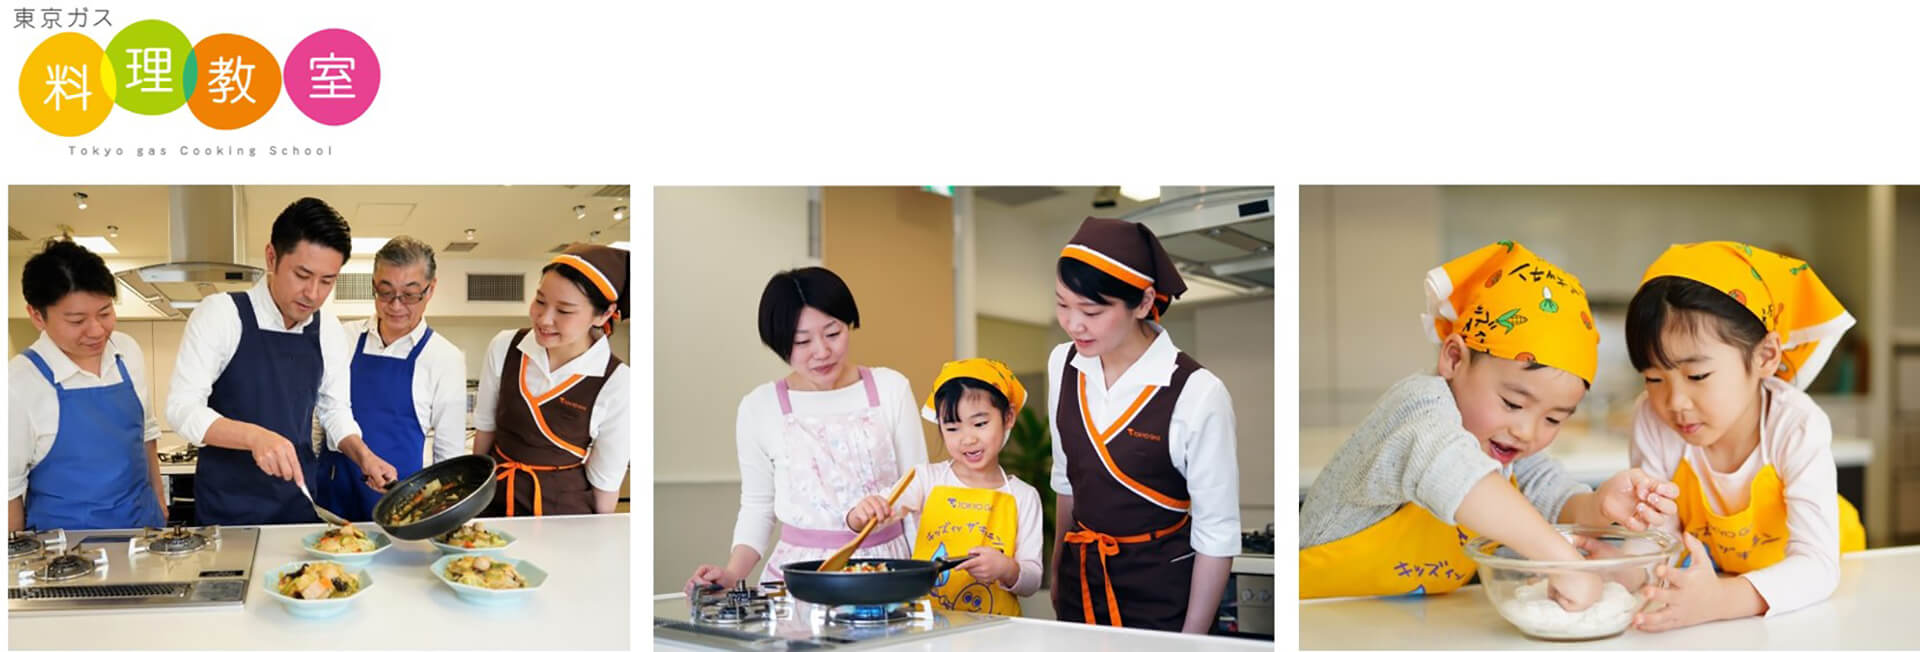 「手作り味噌」東京ガス料理教室